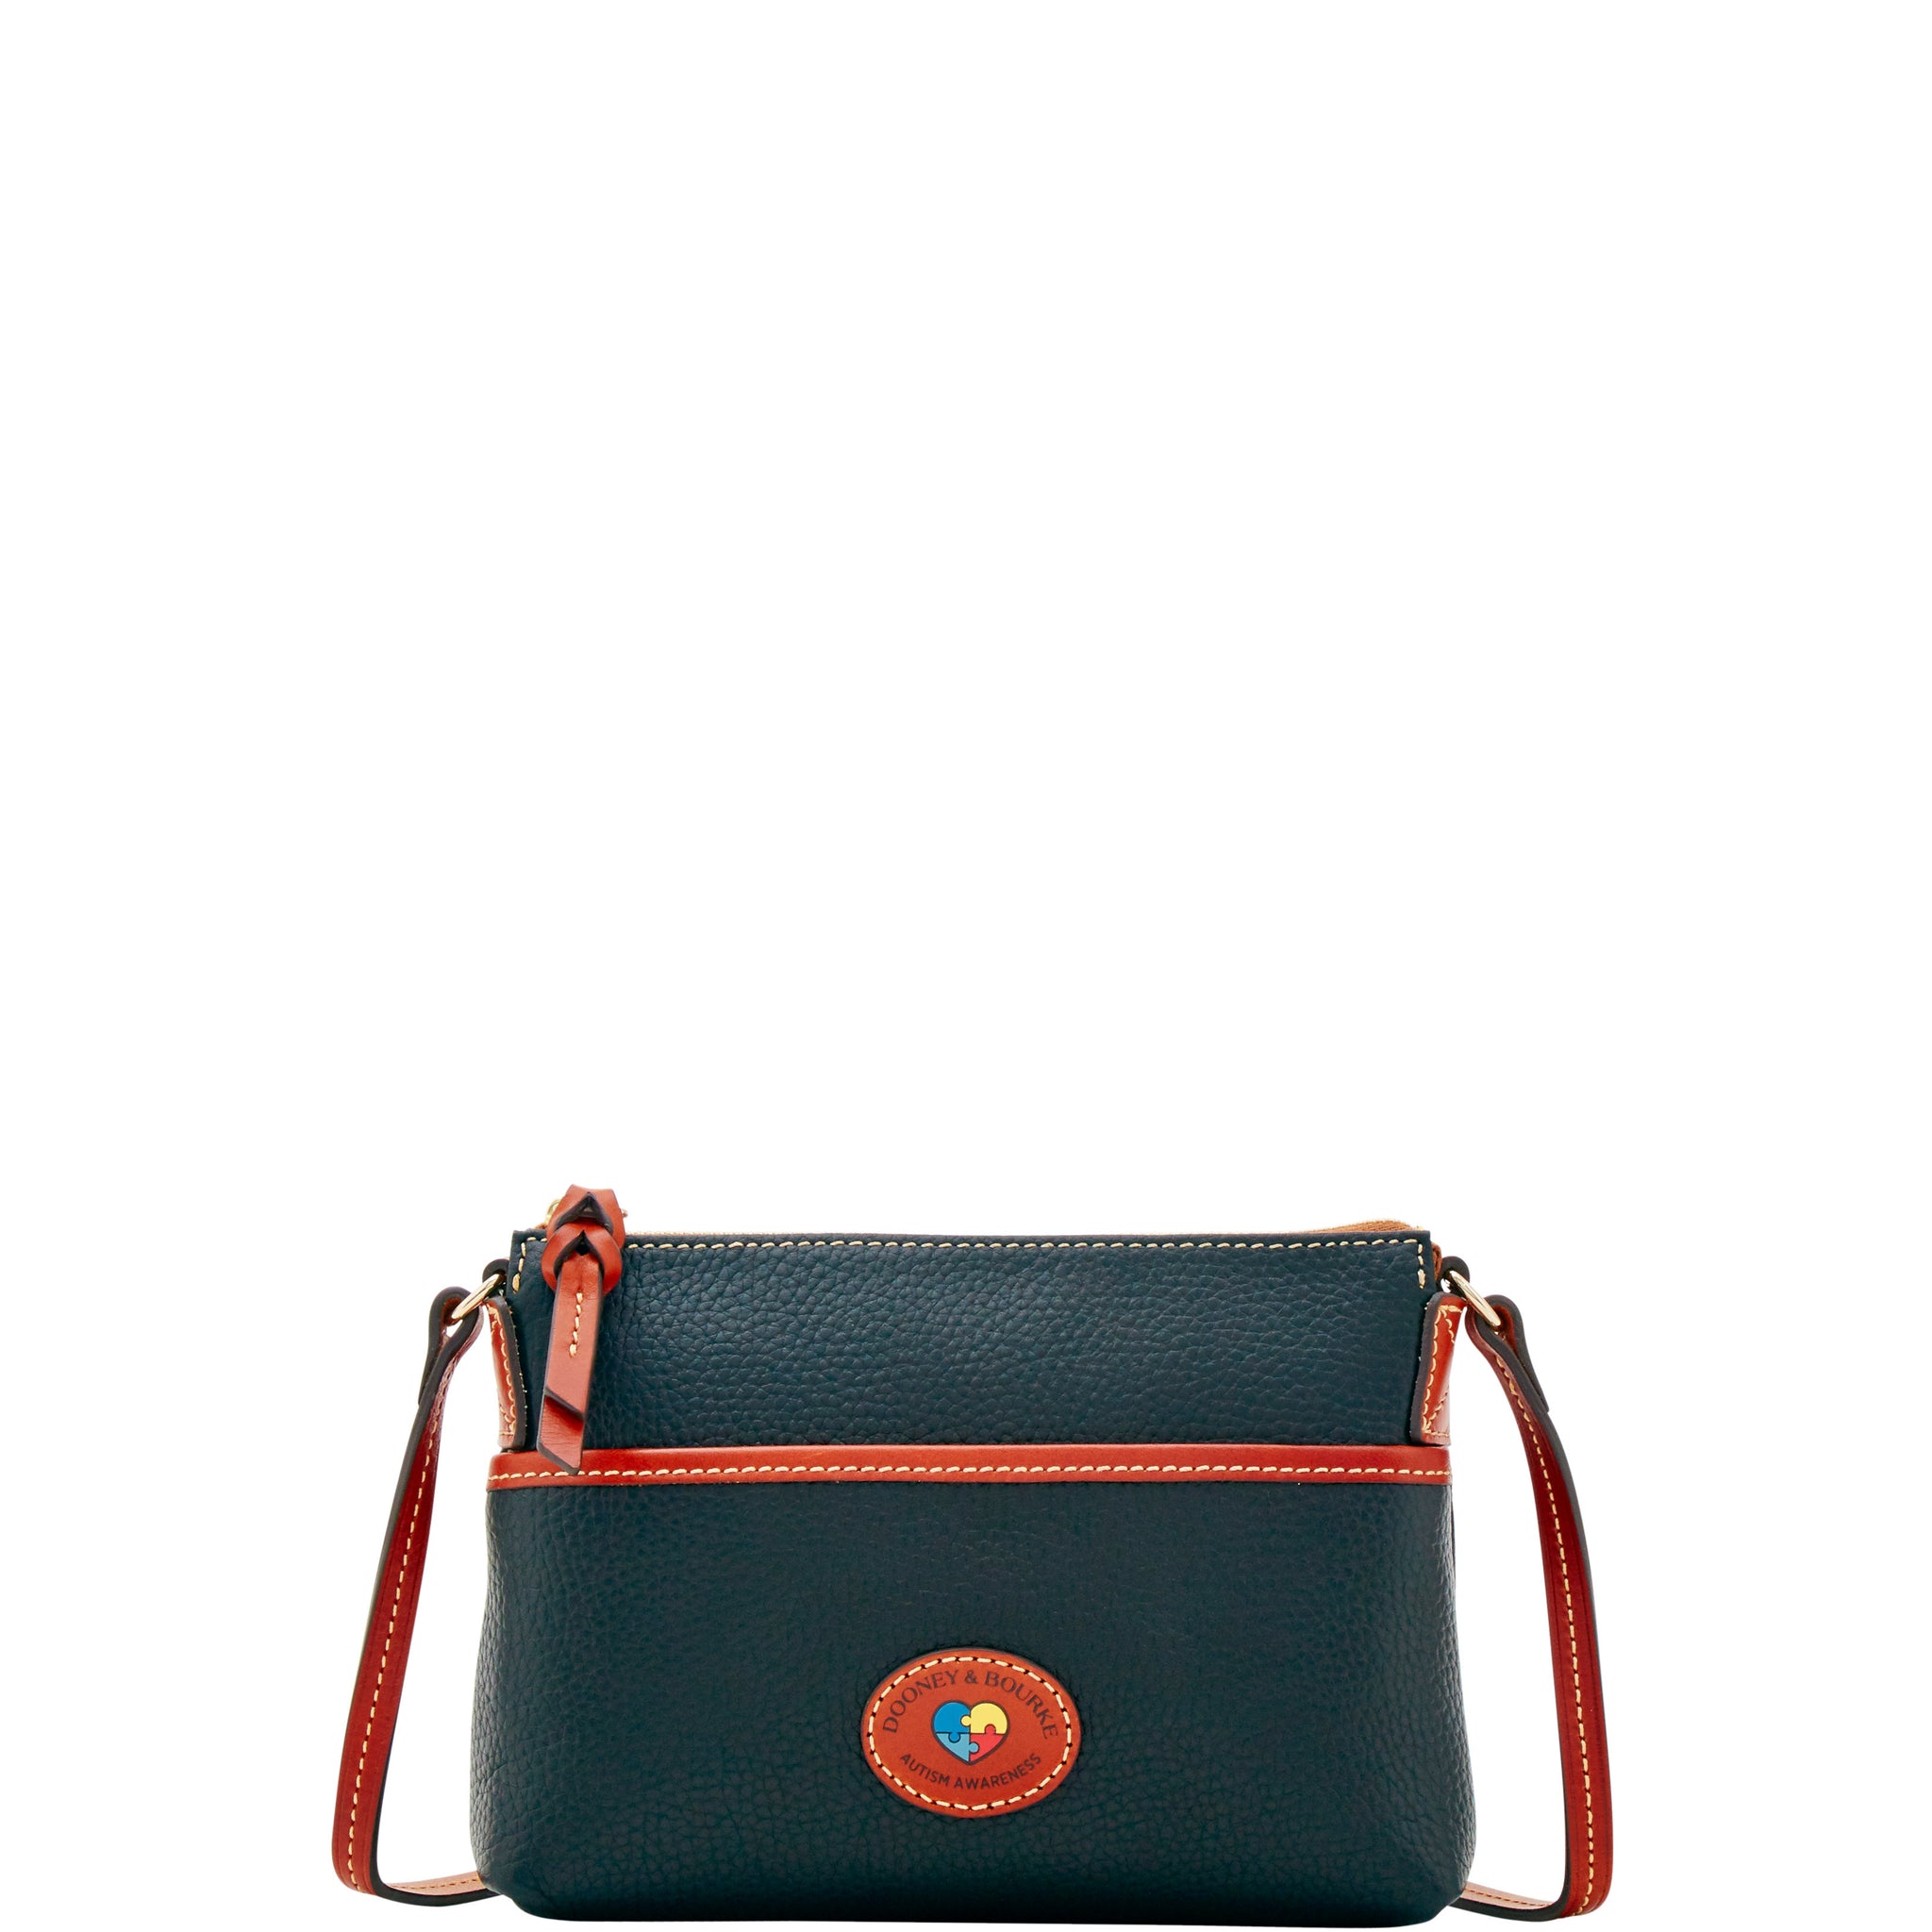 Dooney & Bourke Handbag, Nylon Crossbody Pouchette - Black